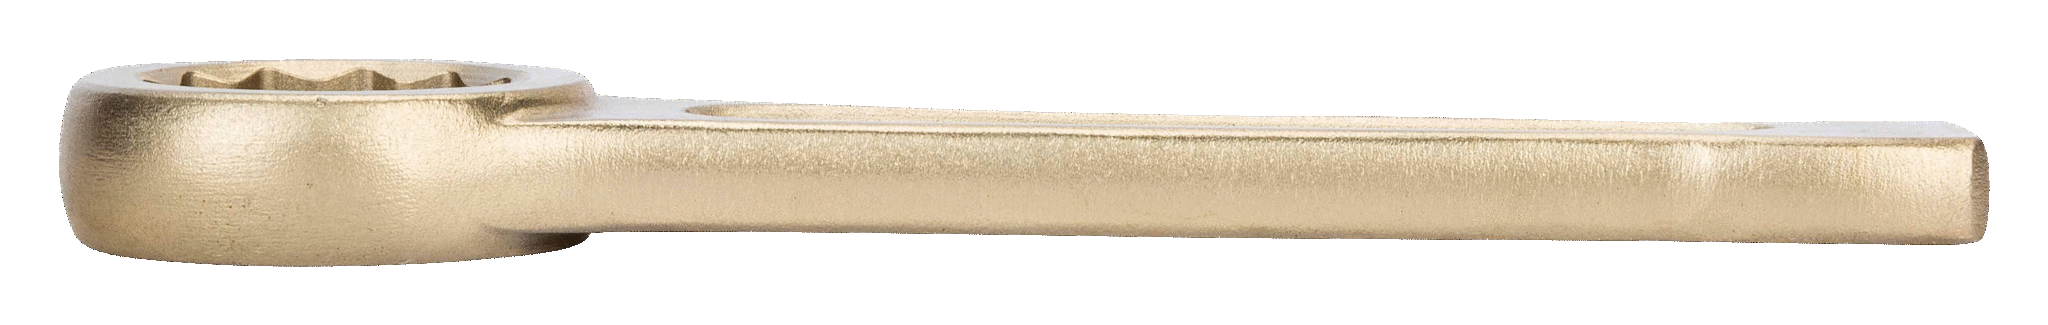 картинка Ударный накидной ключ дюймовых размеров BAHCO NS106-82 от магазина "Элит-инструмент"